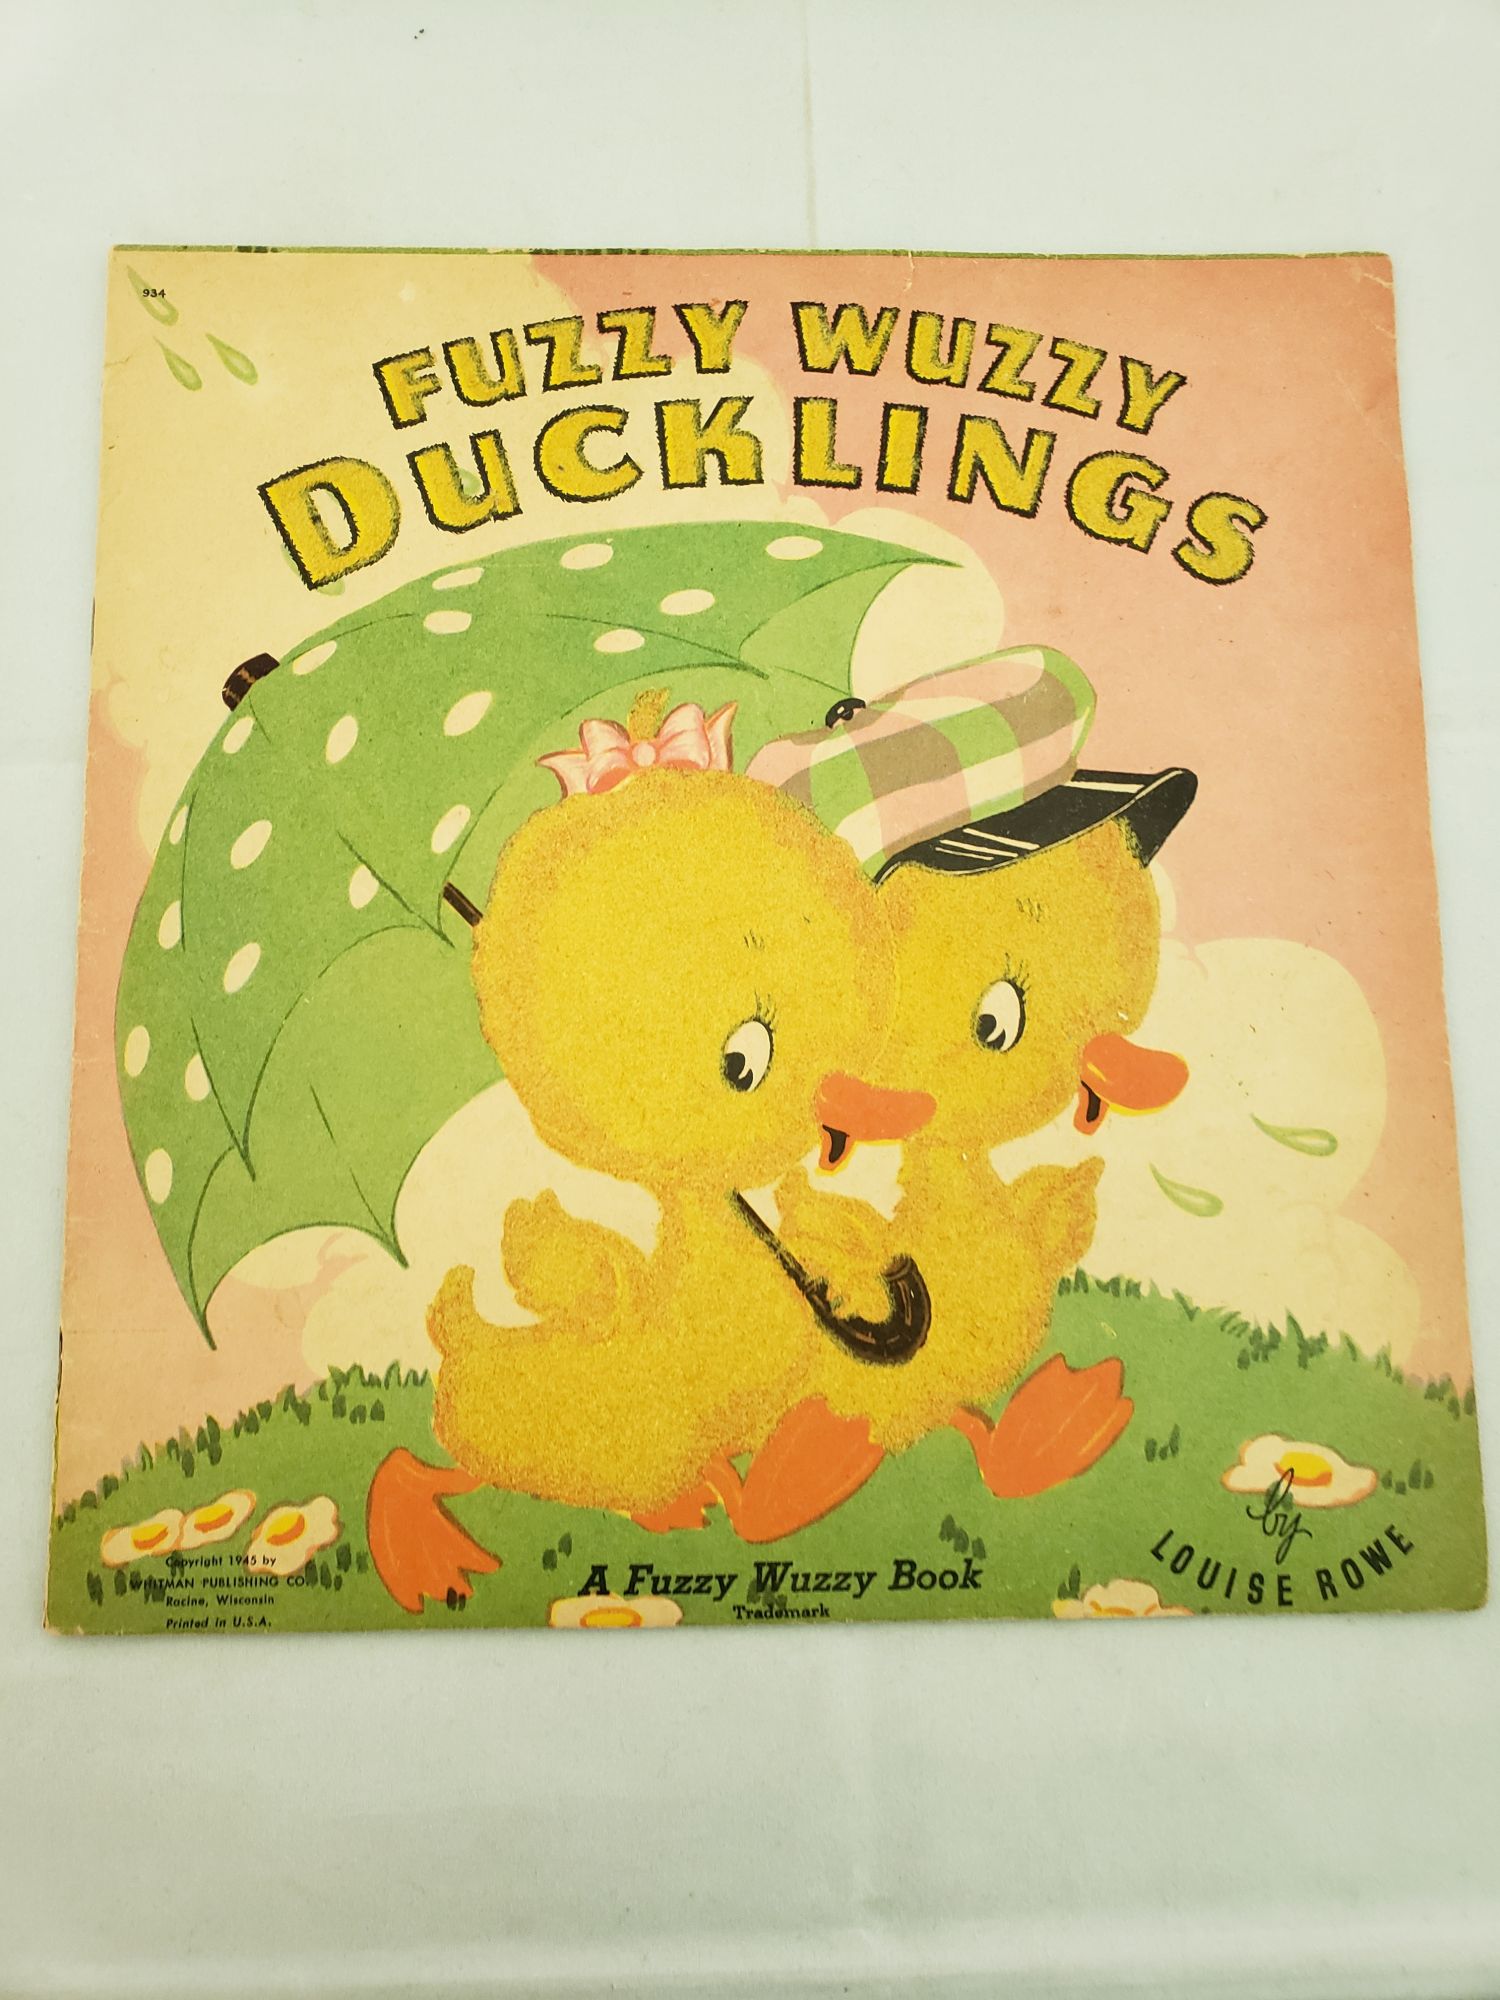 Wuzzy　Fuzzy　Rowe　Ducklings　Louise